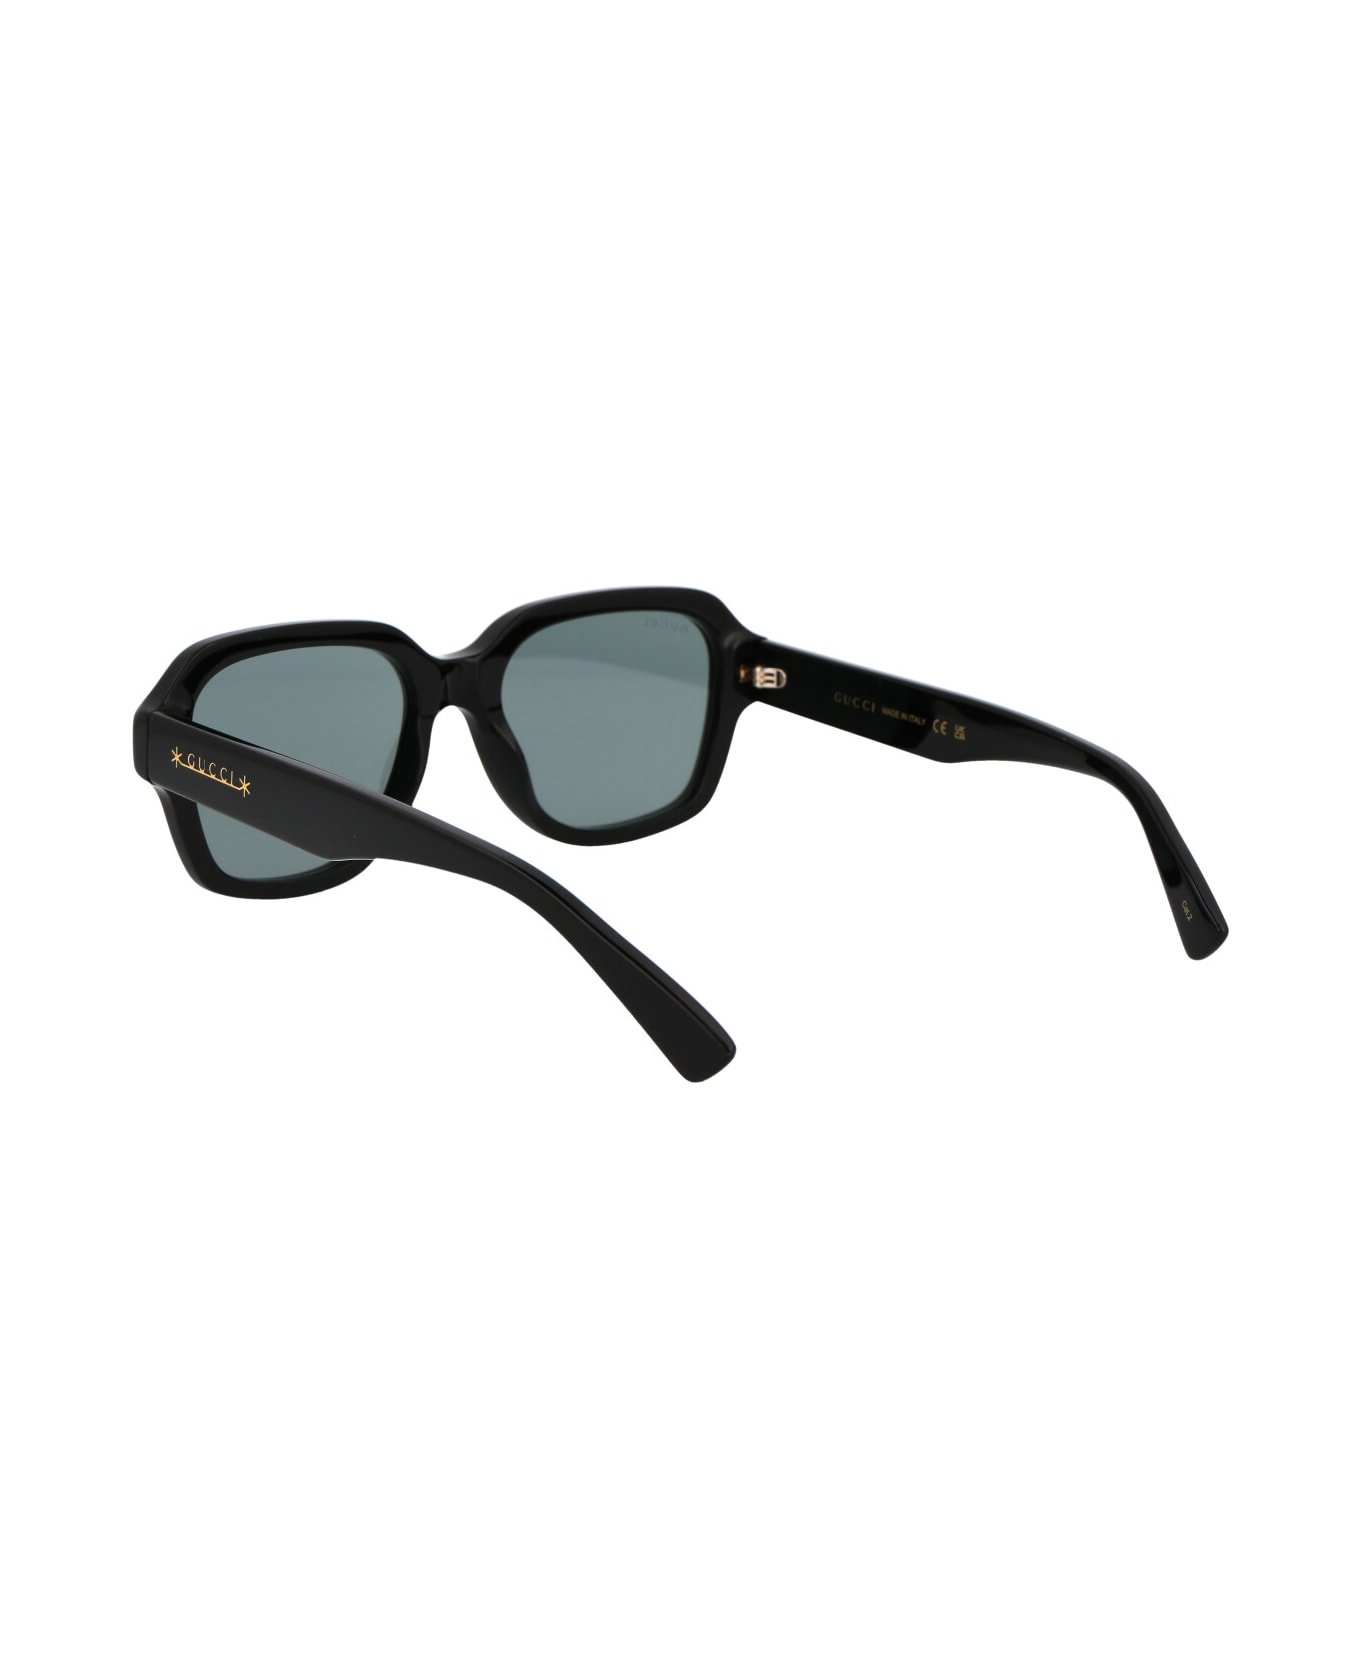 Gucci Eyewear Gg1174s Sunglasses - 001 BLACK BLACK SMOKE サングラス